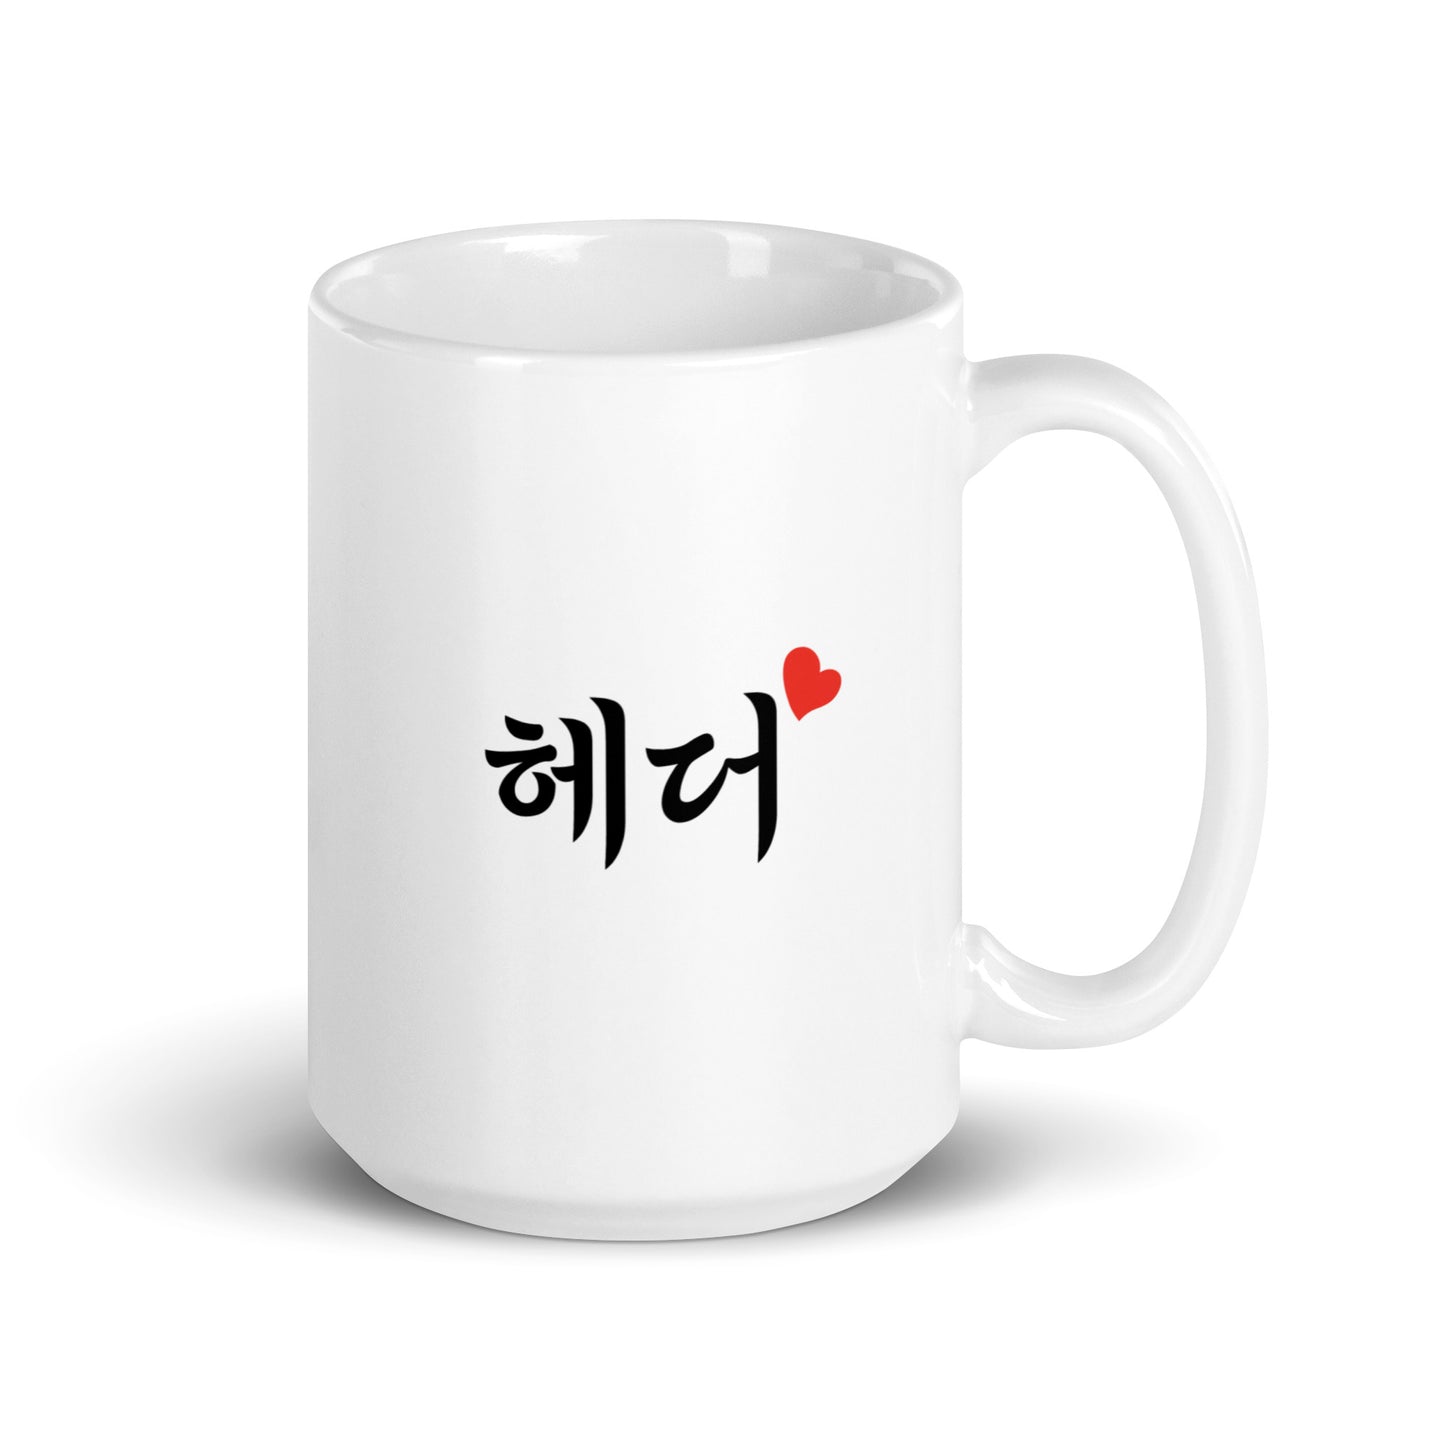 Heather in Hangul Custom Name Gift Ceramic Mug